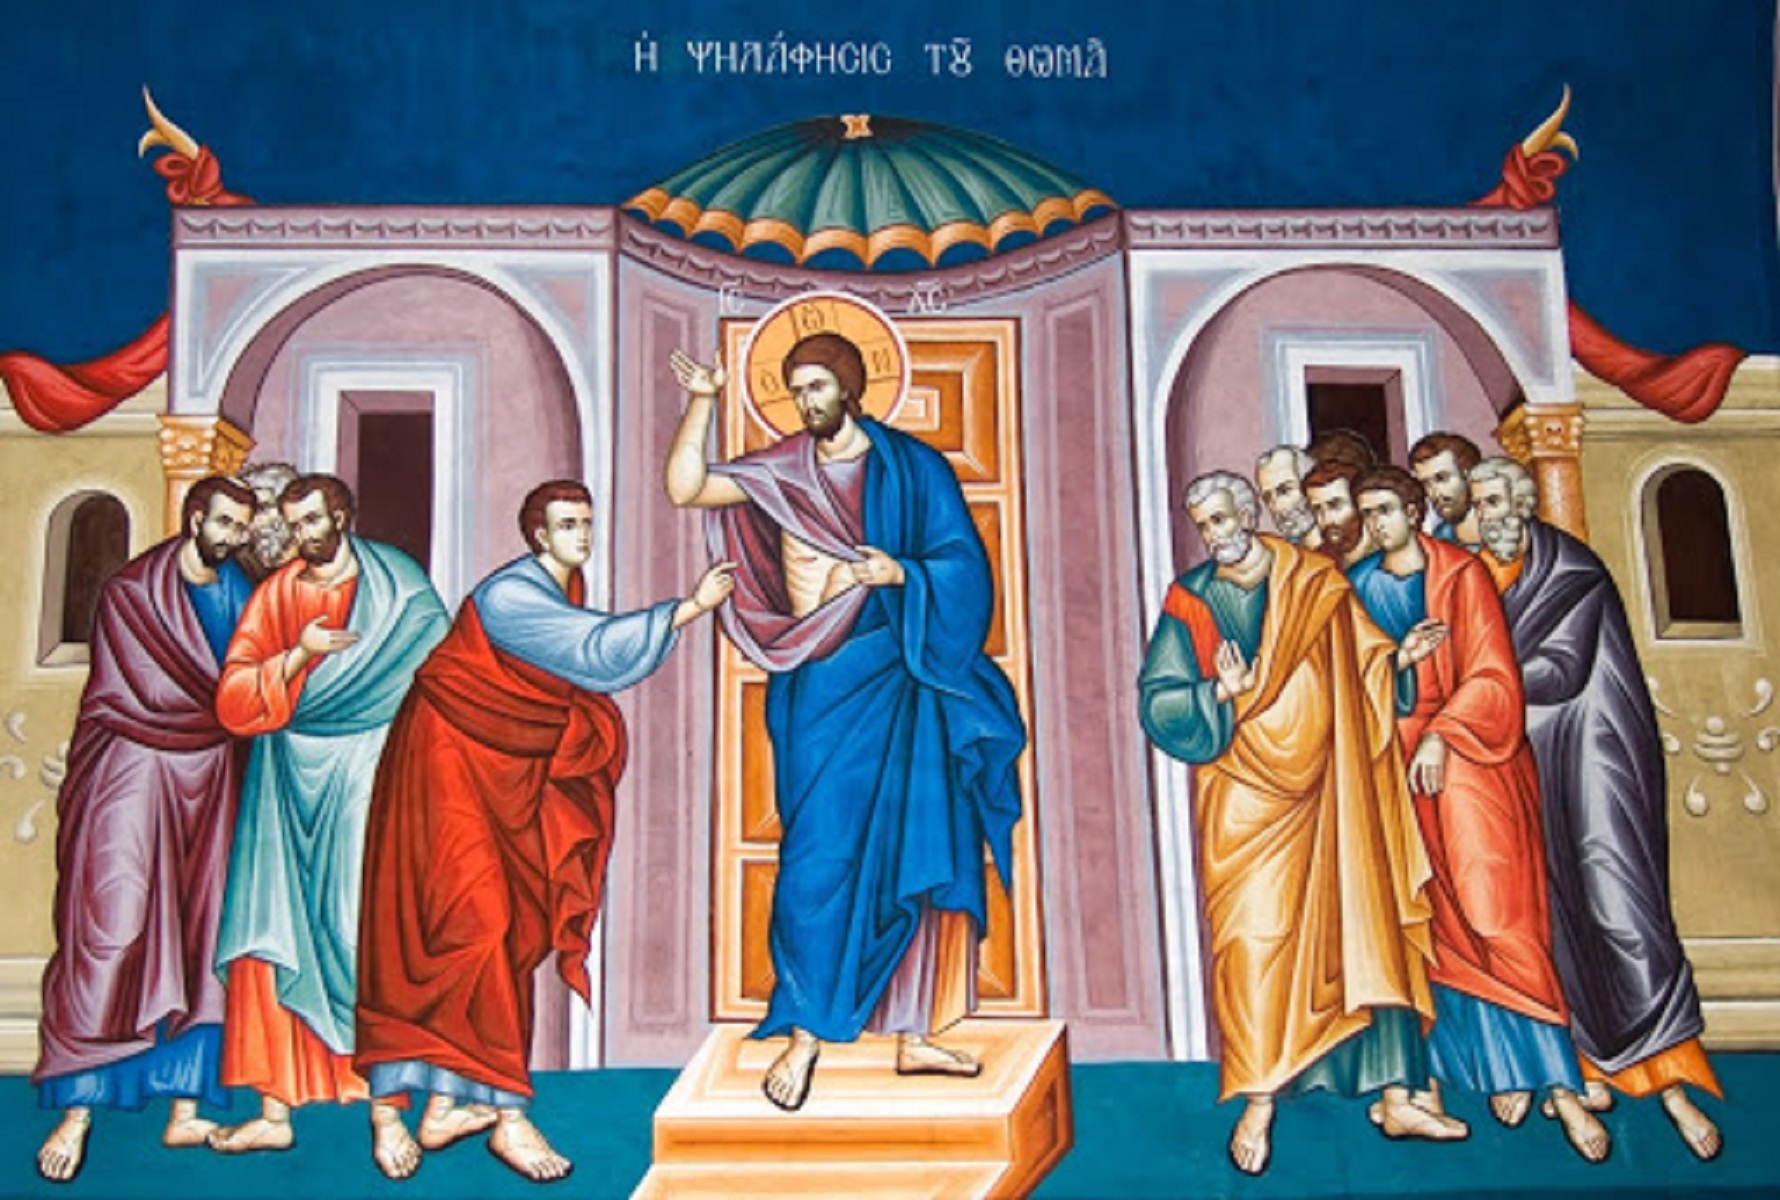 apostolos-thomas-kyriaki